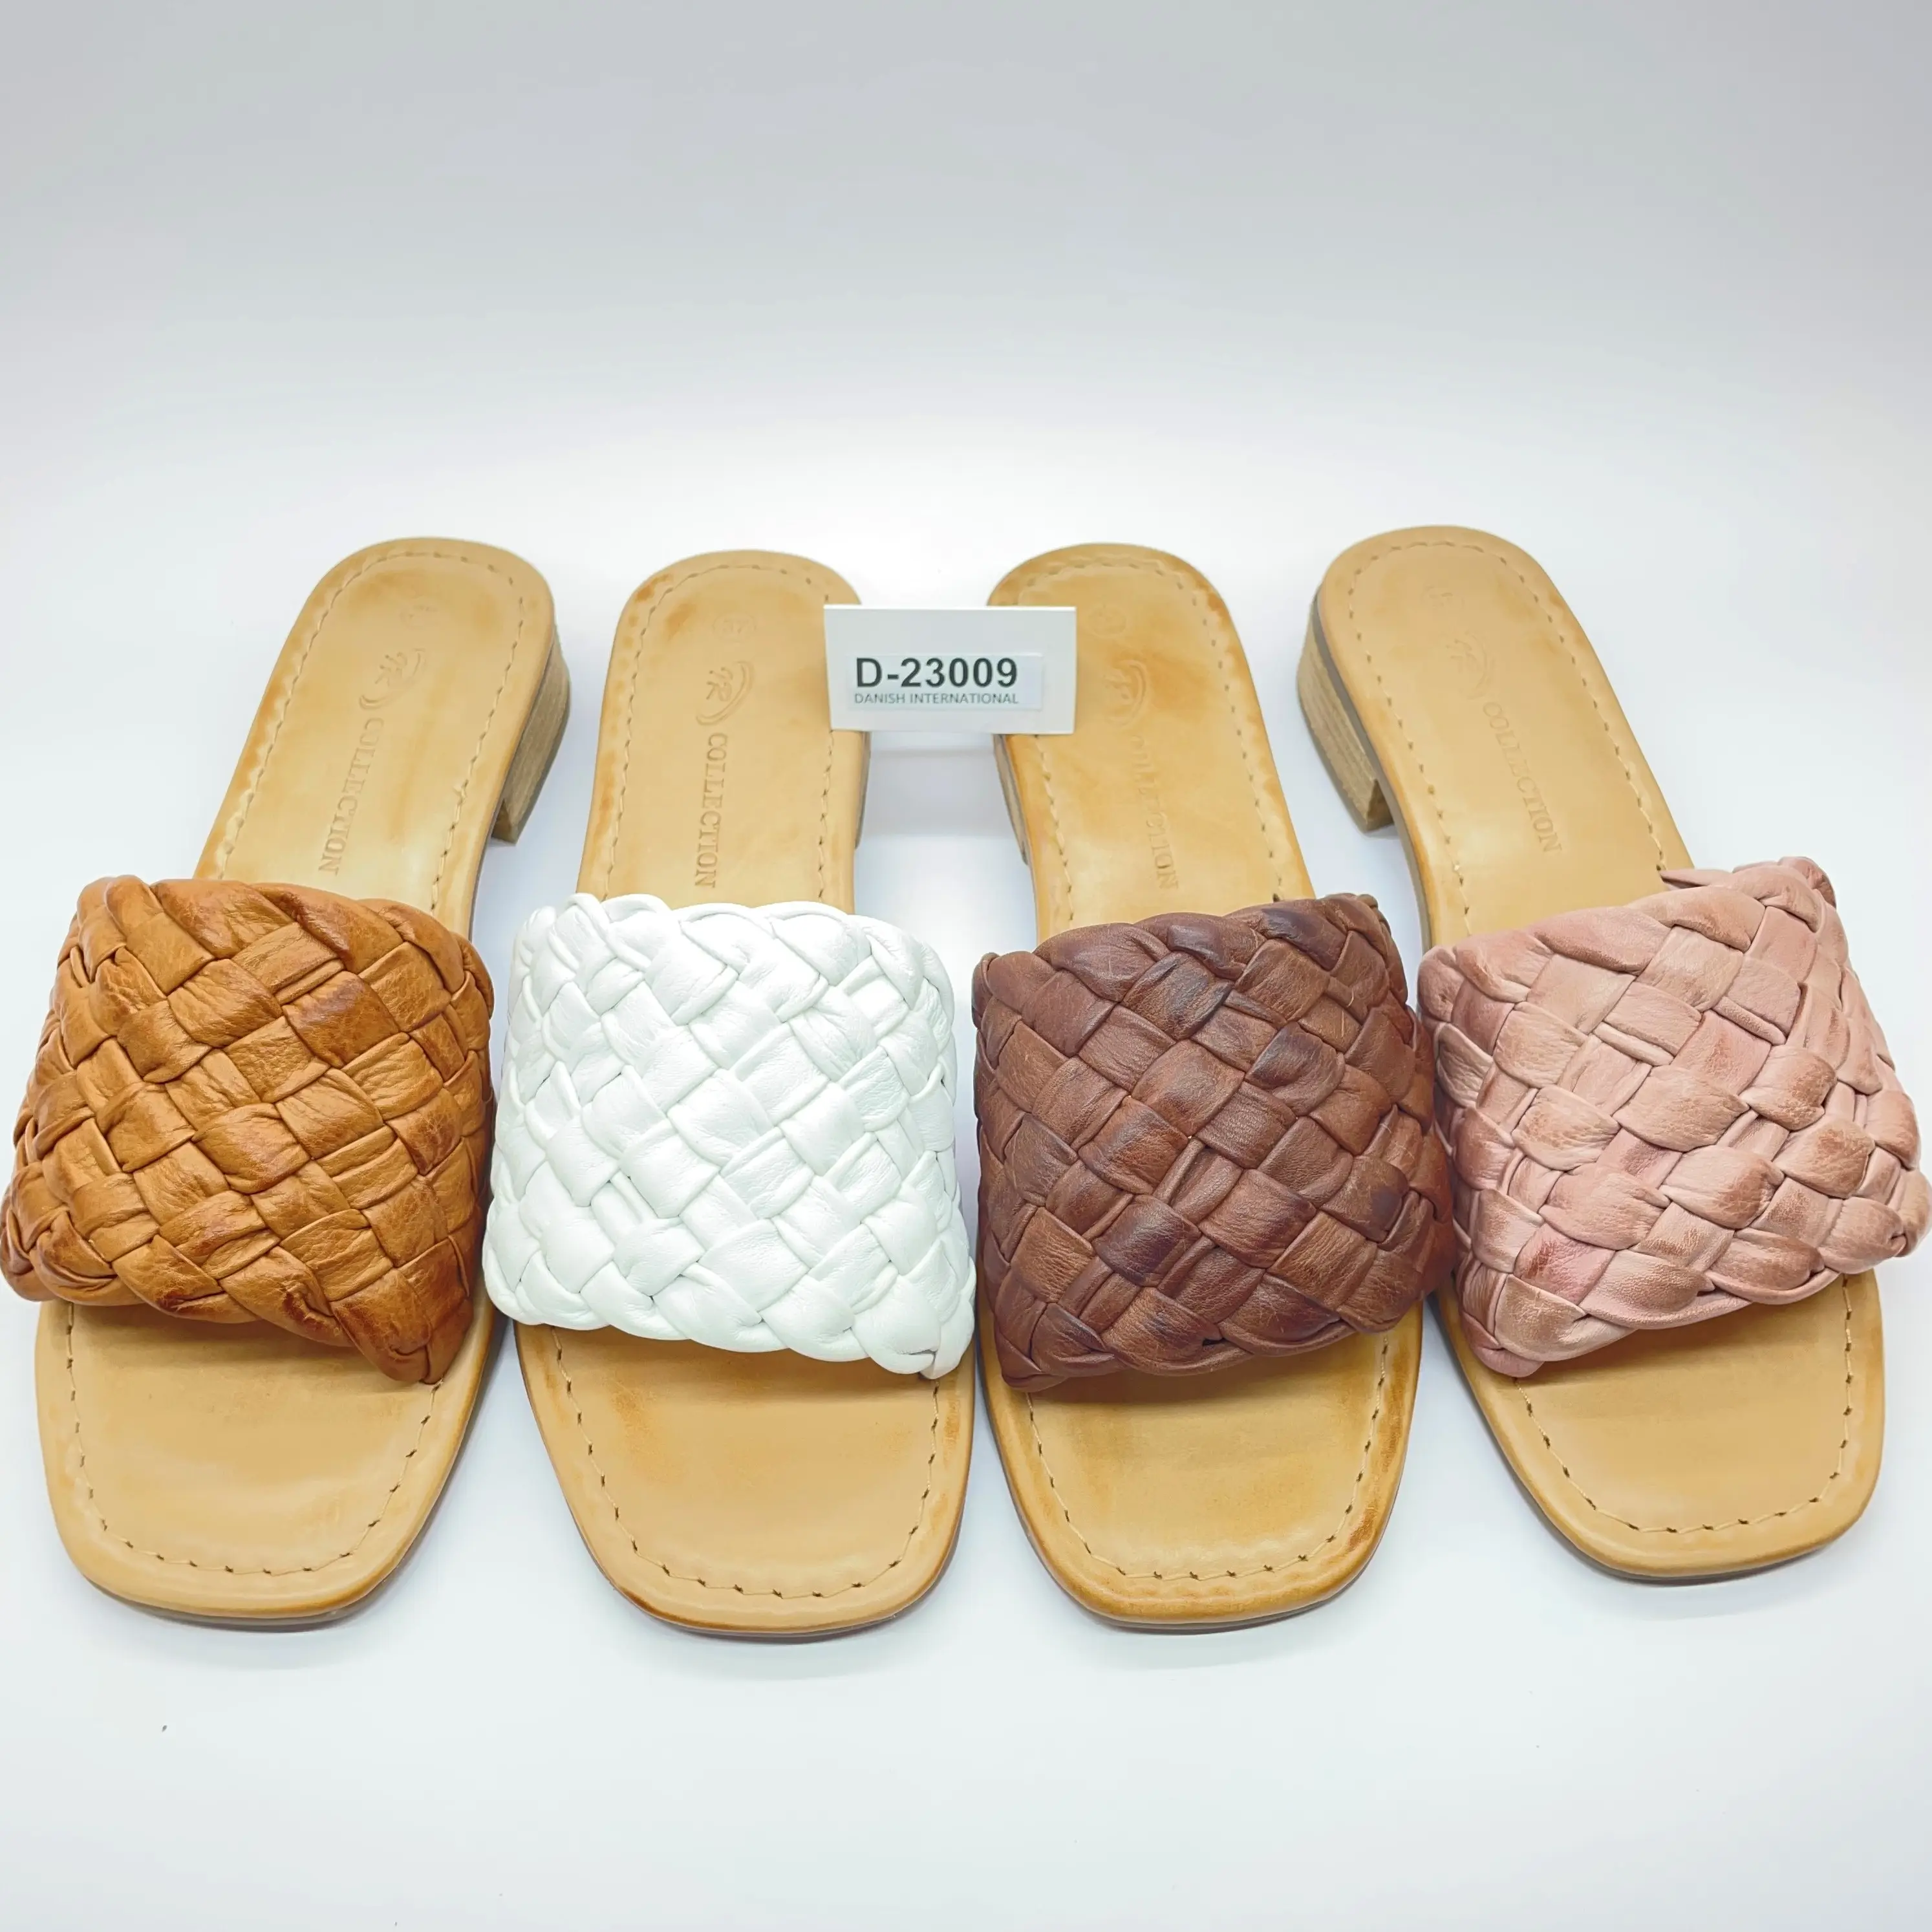 Damen weibende weiche Leder-Sandalen hochwertiges Leder bequeme langlebige Sandalen eleganter Look-Sandalen